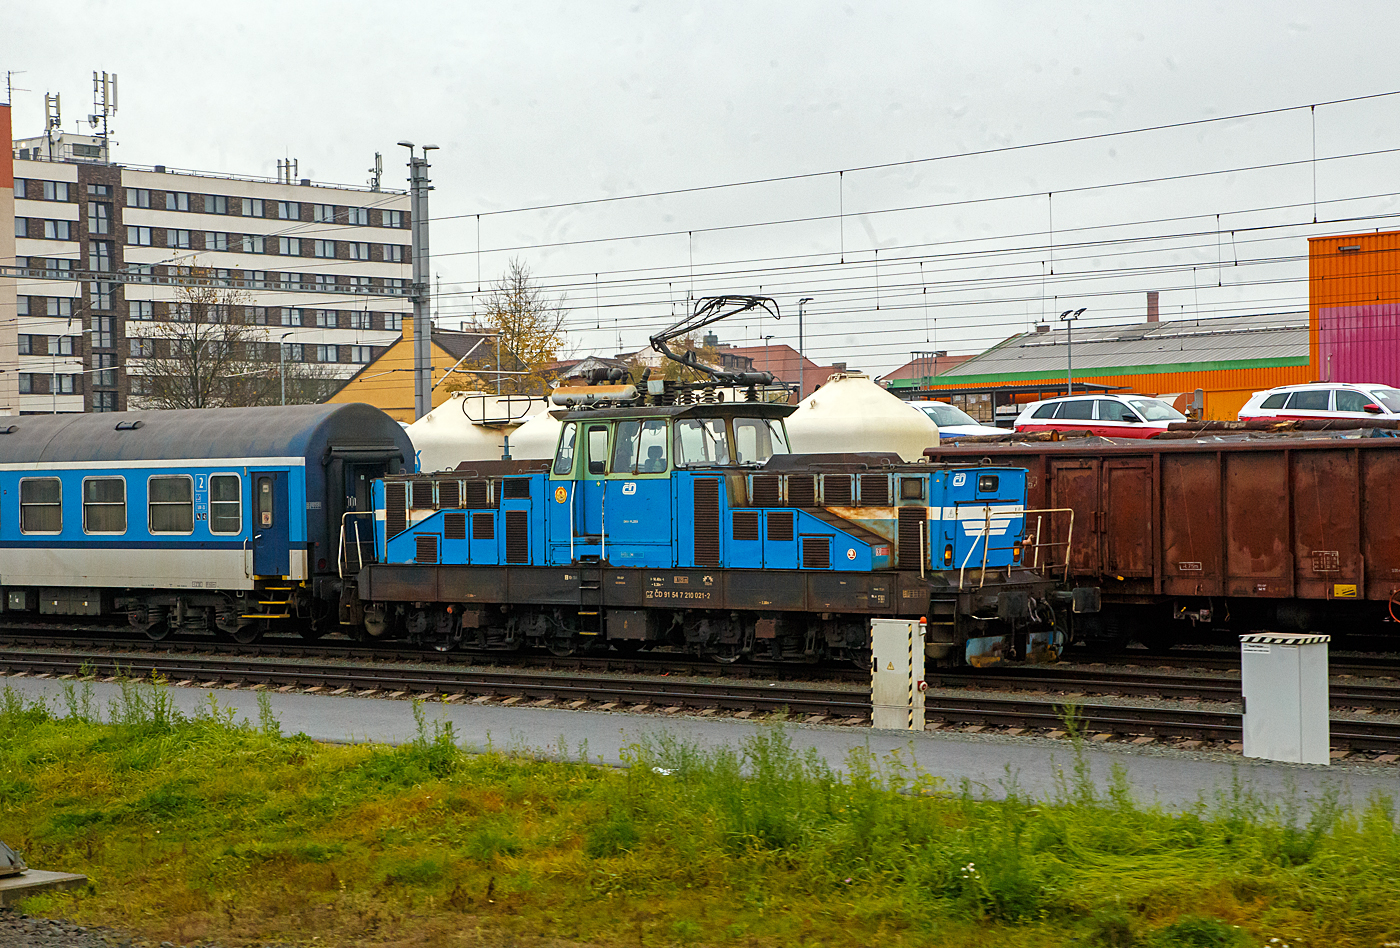 Die elektrische AC-Rangierlokomotive ČD 210 021-2 (CZ ČD 91 54 7 210 021-2) der České dráhy (ČD) steht am 24.11.2022 bei Pilsen (Plzeň) mit einem Personenzug (aufgenommen aus einem alex-Zug).

Die ČD Baureihe 210, ex ČSD-Baureihe S 458.0 (ab 1988 Baureihe 210) ist eine elektrische Rangierlokomotive für 25 kV 50 Hz Wechselstrom.  Sie wurde gleichzeitig mit der Gleichstromlok E 458.0 (heute BR 110) entwickelt, um auf größeren Personen- sowie Güterbahnhöfen den Verschub sowie die Beförderung von Übergabefahrten durchzuführen. Der mechanische Teil ist identisch mit dem der E 458.0, nur im elektrischen Aufbau hat die Lokomotive einen Trafo und eine andere Steuerung. Eine minimale Geschwindigkeit bis zu 5 km/h ist möglich. Die Lokomotiven sind mit einem speziellen Trafo für die Beheizung des Zuges mit 1,5 kV bzw. 3 kV 50 Hz ausgerüstet, und können somit auch im Personenzugdienst eingesetzt werden. Das Übersetzungsverhältnis zwischen Fahrmotorritzel und Großrad beträgt 1:4,055, was der Lokomotive eine Höchstgeschwindigkeit von 80 km/h ermöglicht. Für den Betrieb auf nicht elektrifizierten Streckenteilen besitzt die Lok Akkumulatoren.

TECHNISCHE DATEN:
Gebaute Stück: 74
Spurweite: 1.435 mm (Normalspur)
Achsformel: Bo’Bo’
Länge über Puffer: 14.400 mm
Rahmenlänge:  13.160 mm
Breite: 3.000 mm
Höhe (Pantograph gesenkt):  4.625 mm
Achsstand im Drehgestell : 2.800 mm
Drehzapfenabstand:  6. 300 mm
Treibradraddurchmesser: 1.050 mm (neu) / 980 mm (abgenutzt)
Kleister befahrb. Kurvenradius: R 120 m
Dienstgewicht: 72 t
Max. Achslast : 18 t
Stundenleistung: 984 kW
Dauerleistung: 880 kW
Anfahrzugkraft:  max. 164 kN
Fahrmotoren: 4 Stück Typ TE 006 
Stromsystem: 25 kV 50 Hz AC (Wechselstrom)